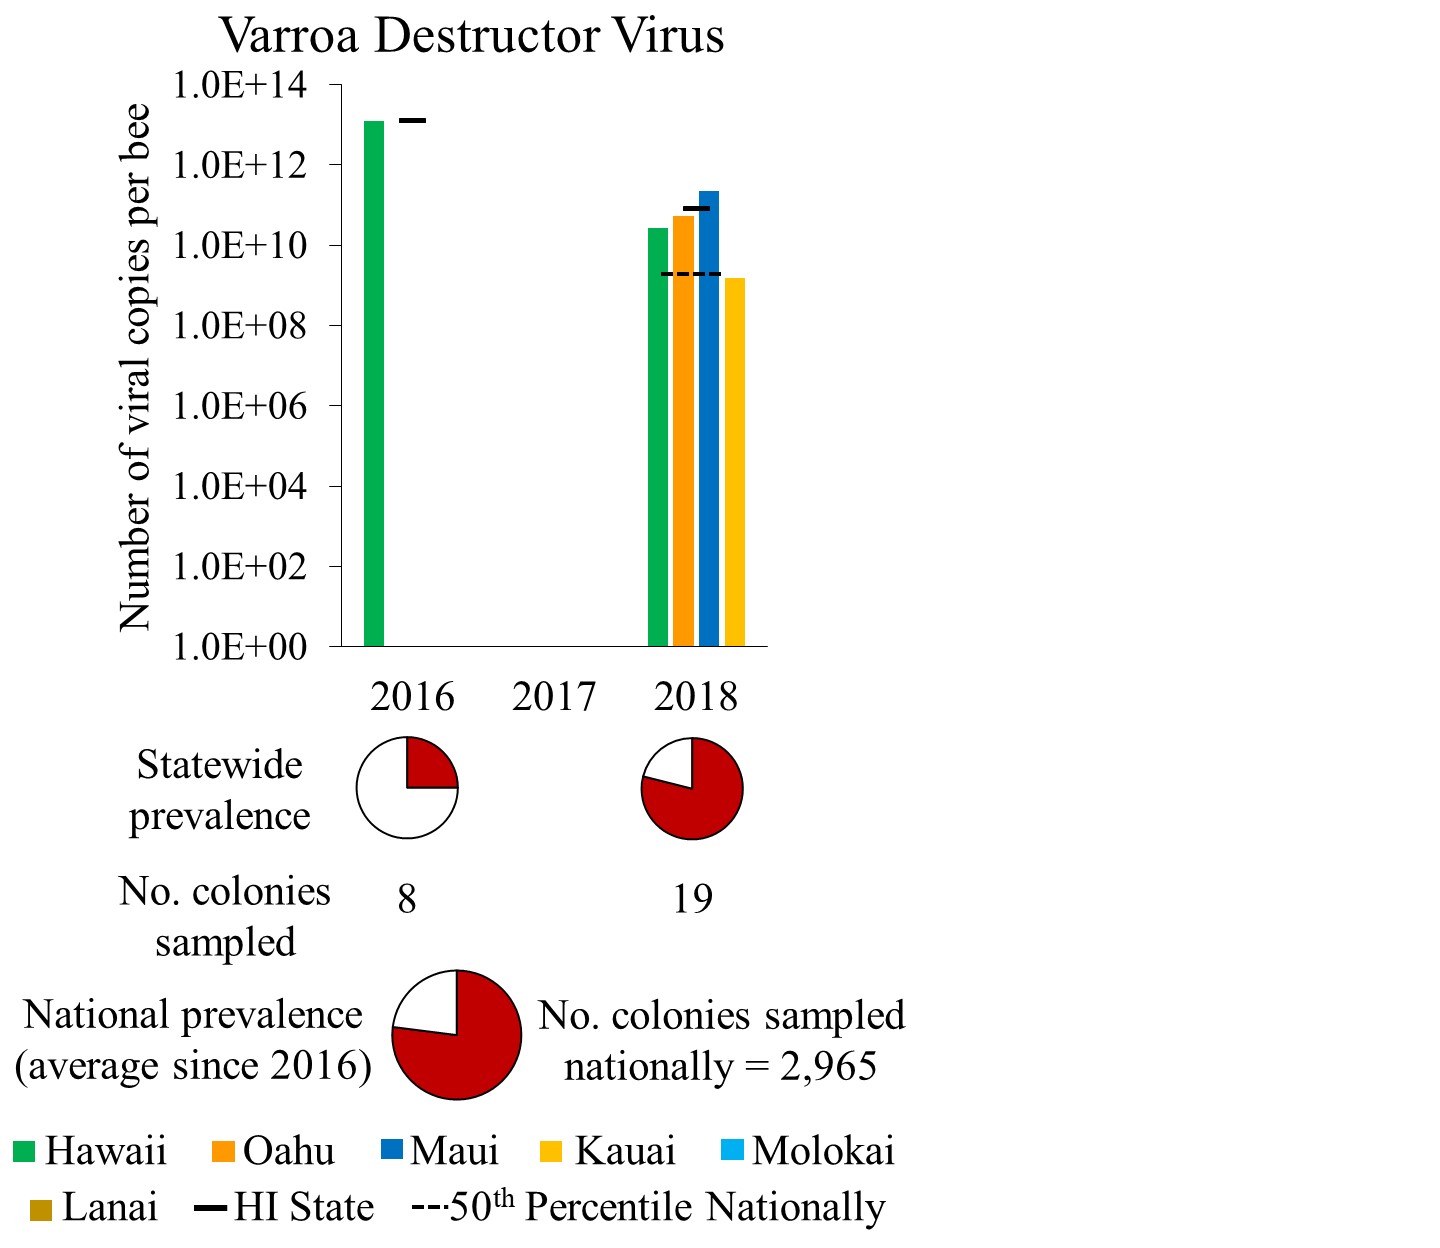 VDV prevalence in Hawaii